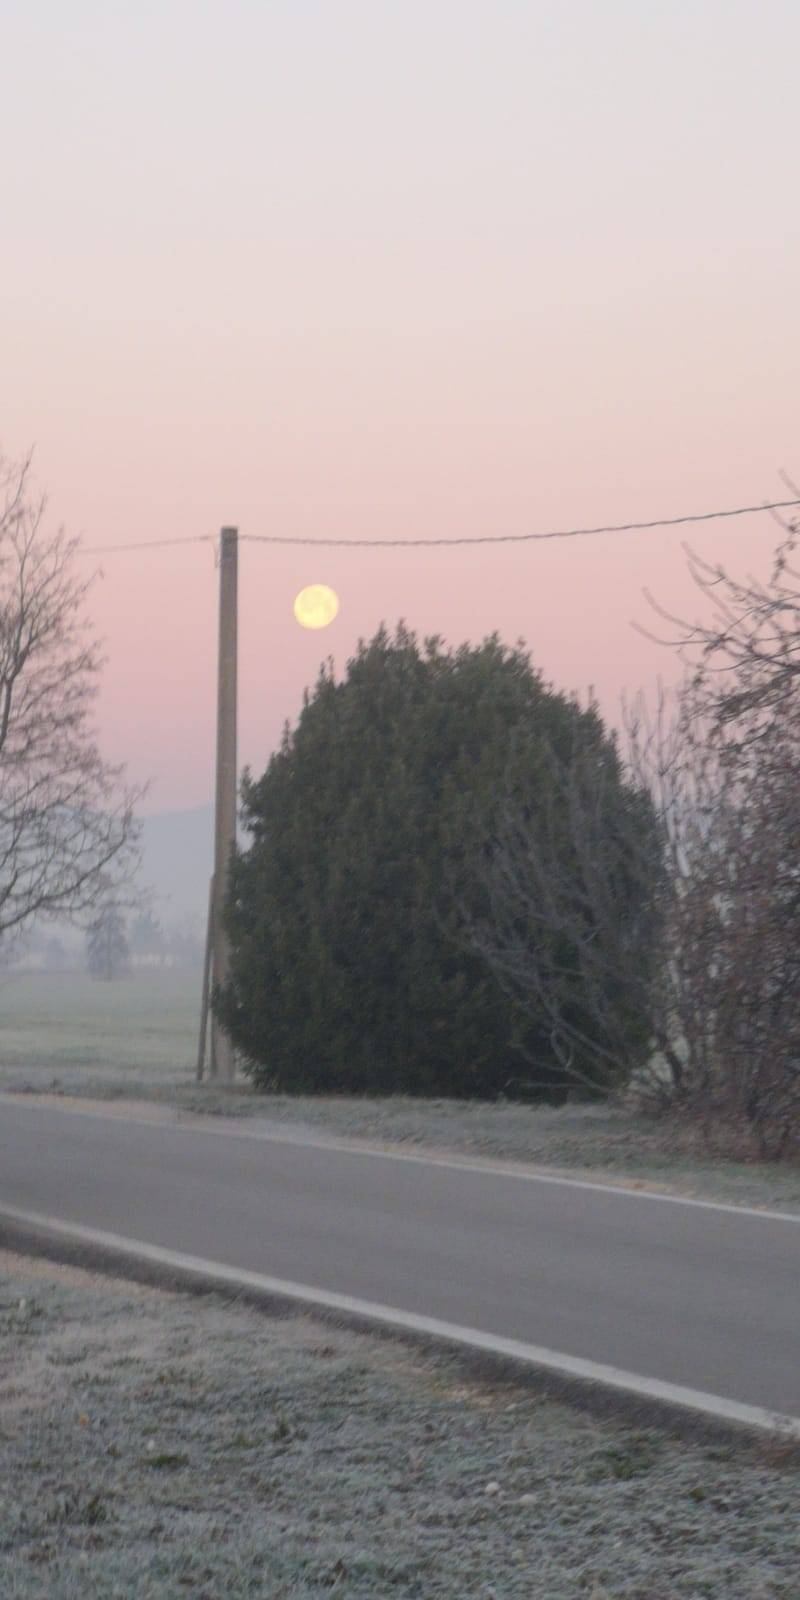 La luna del lupo all'alba del giorno dopo. Lutrano Veneto Orientale. 11012020.